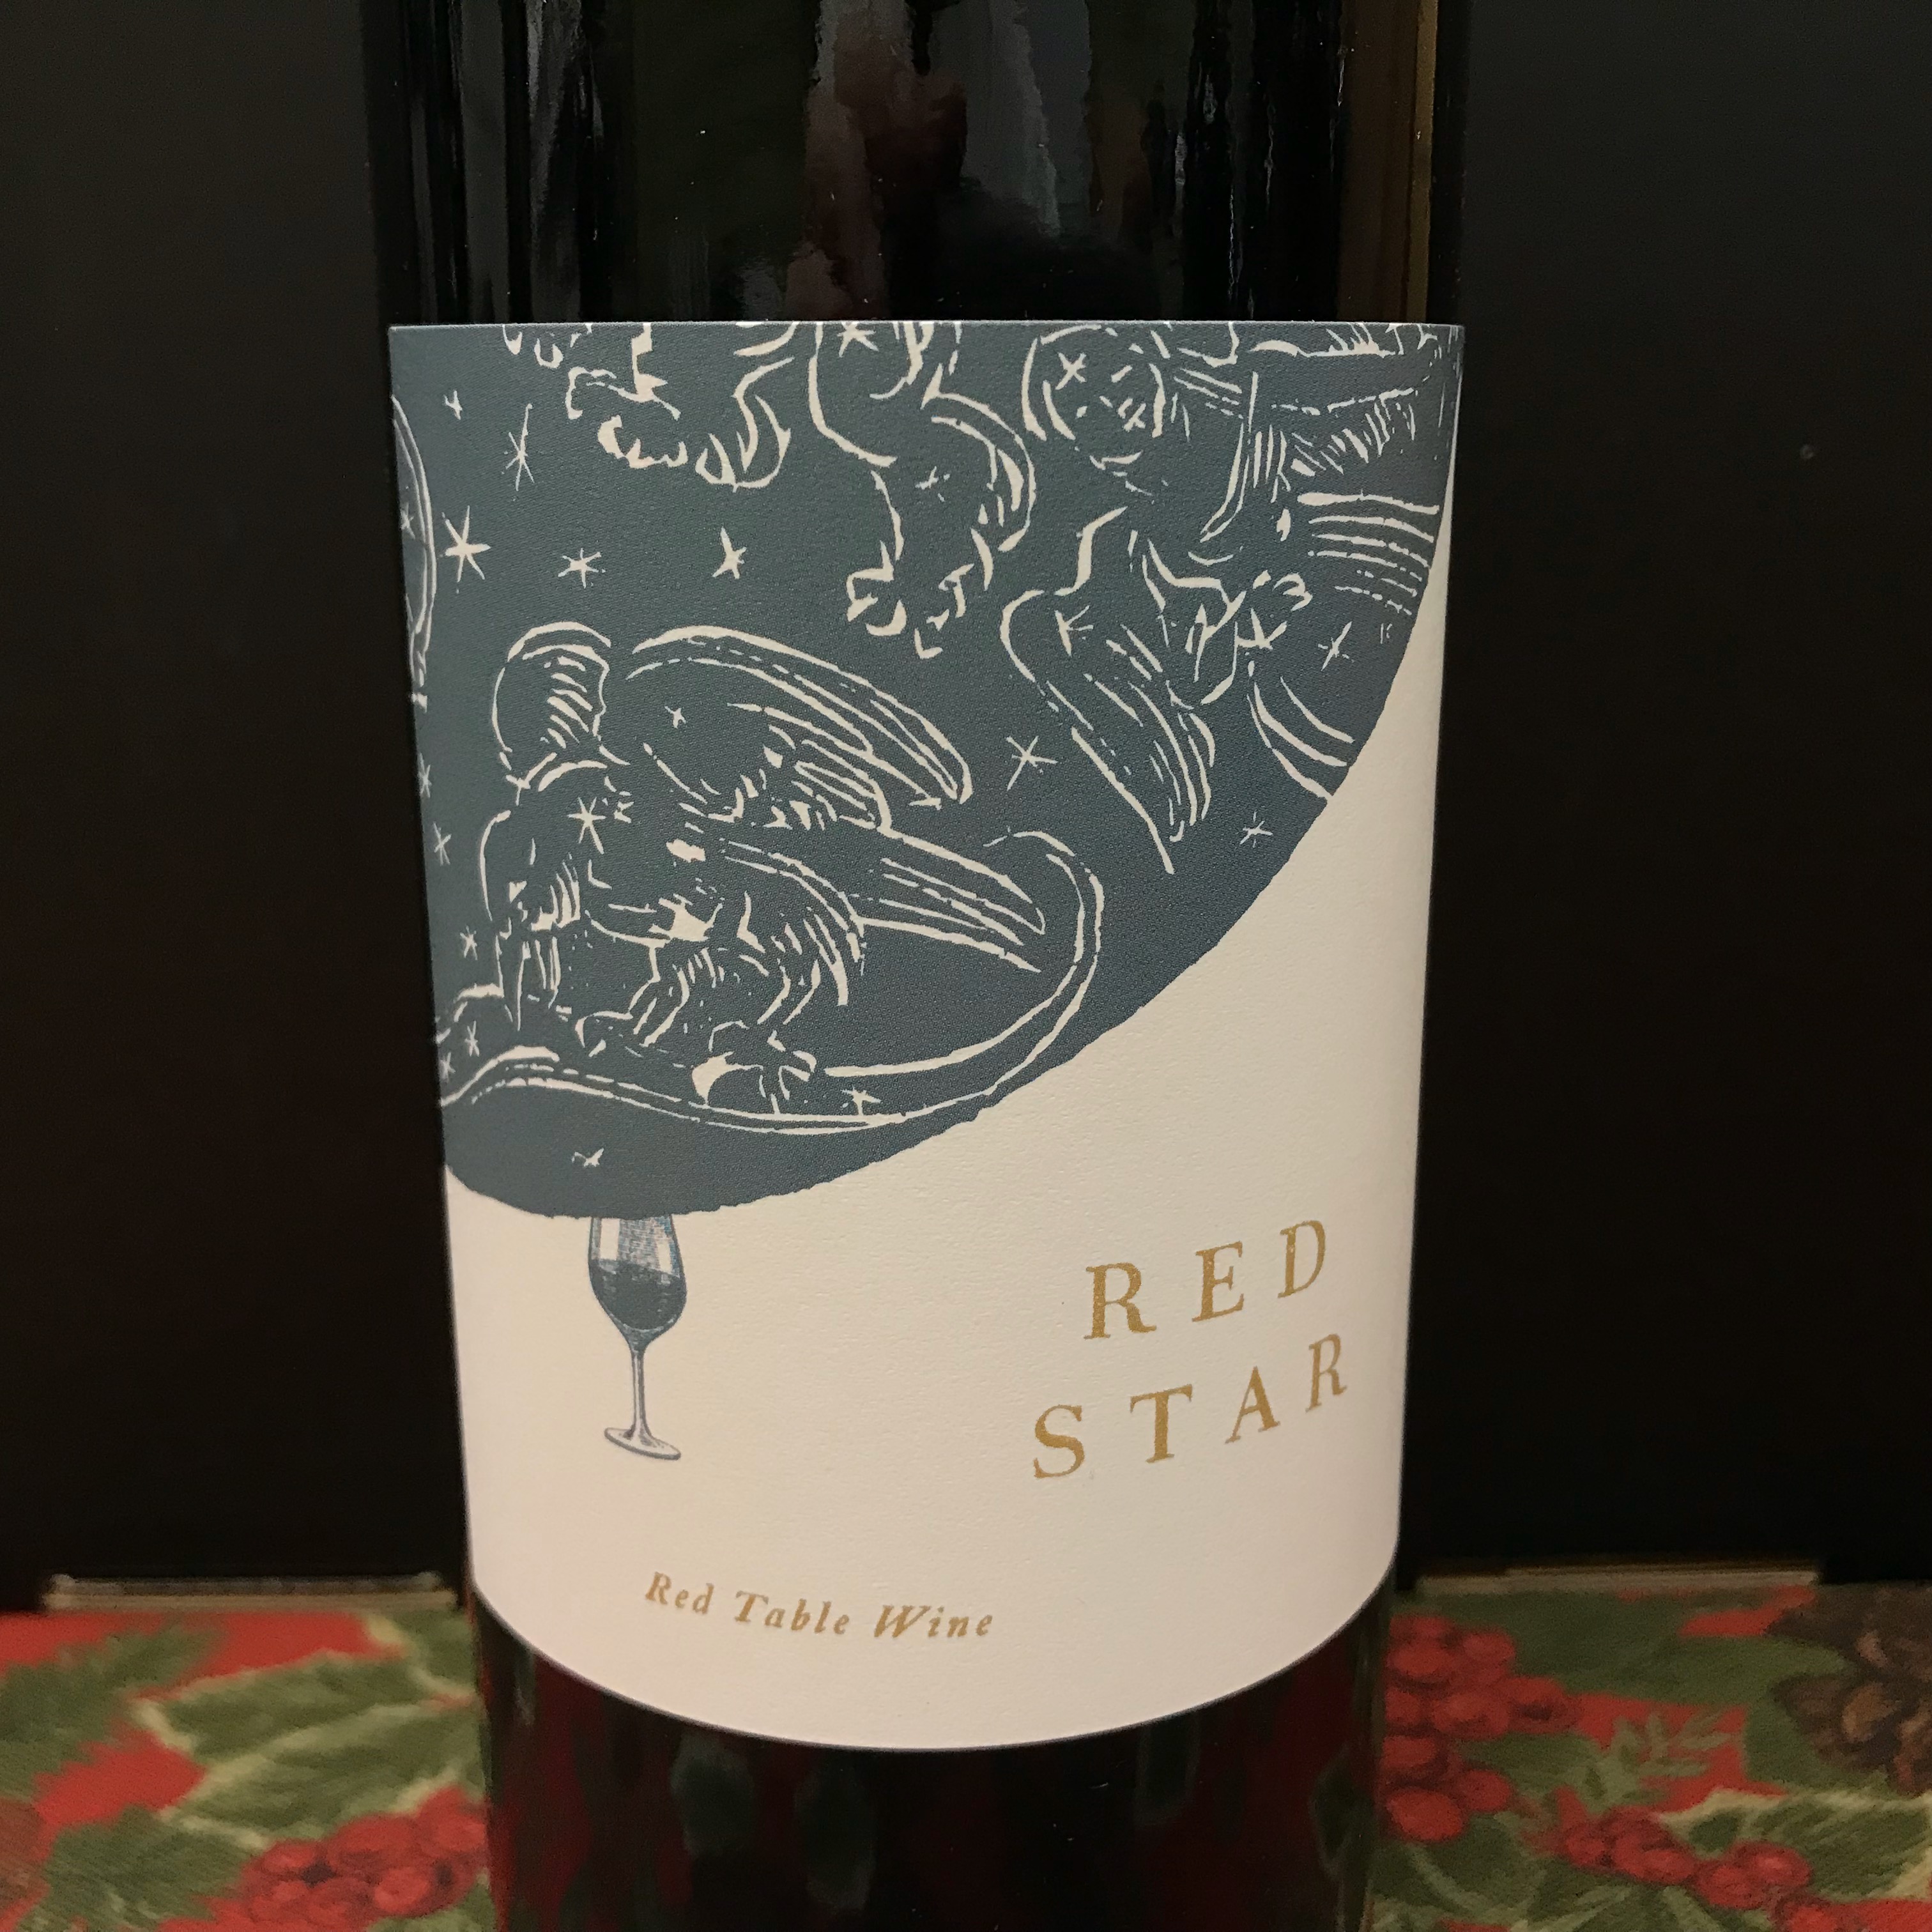 Veritas Vineyards Red Star red table wine